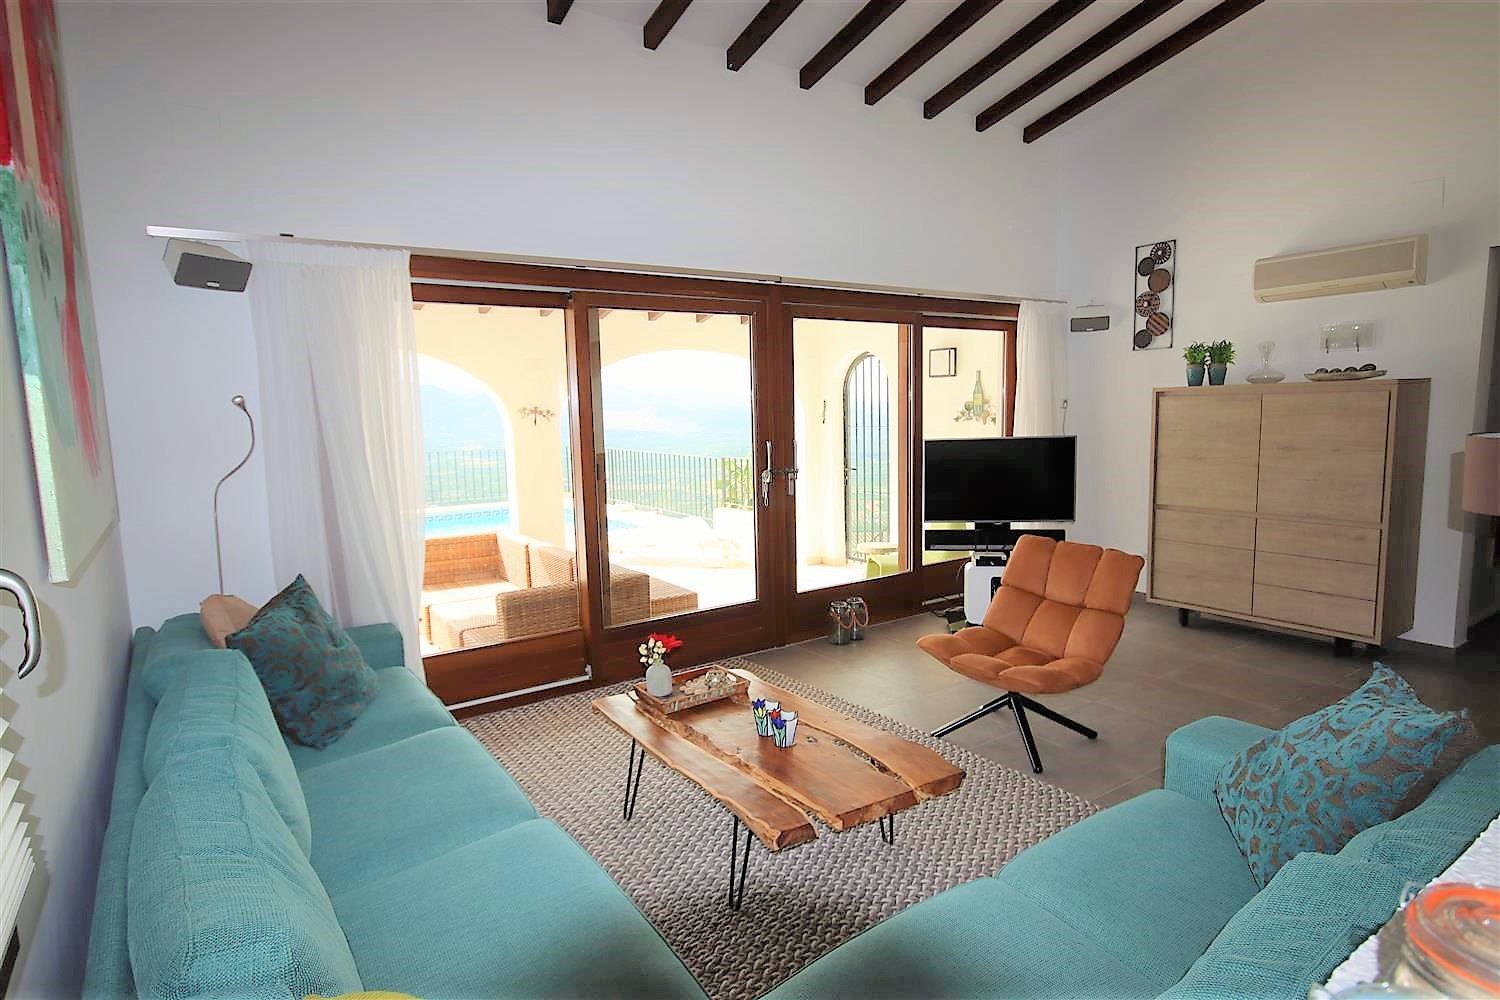 Villa avec 4 chambres, piscine, vue sur la mer Monte Pego